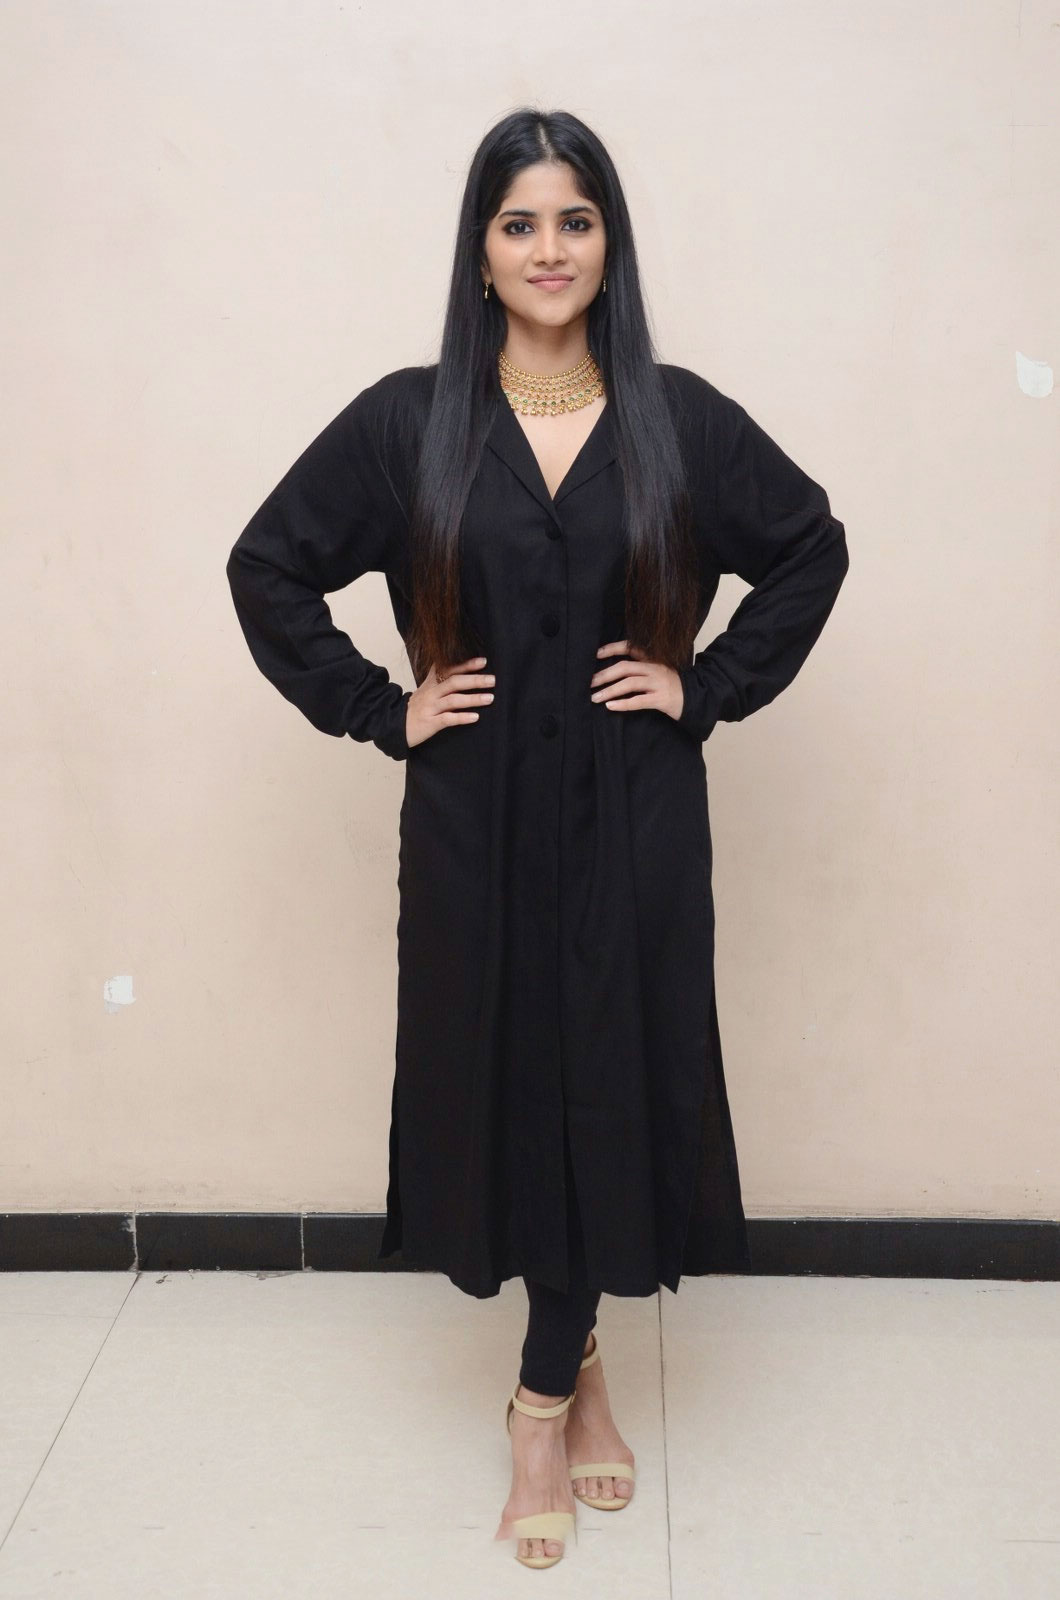 Actress Megha Akash Photos in black dress